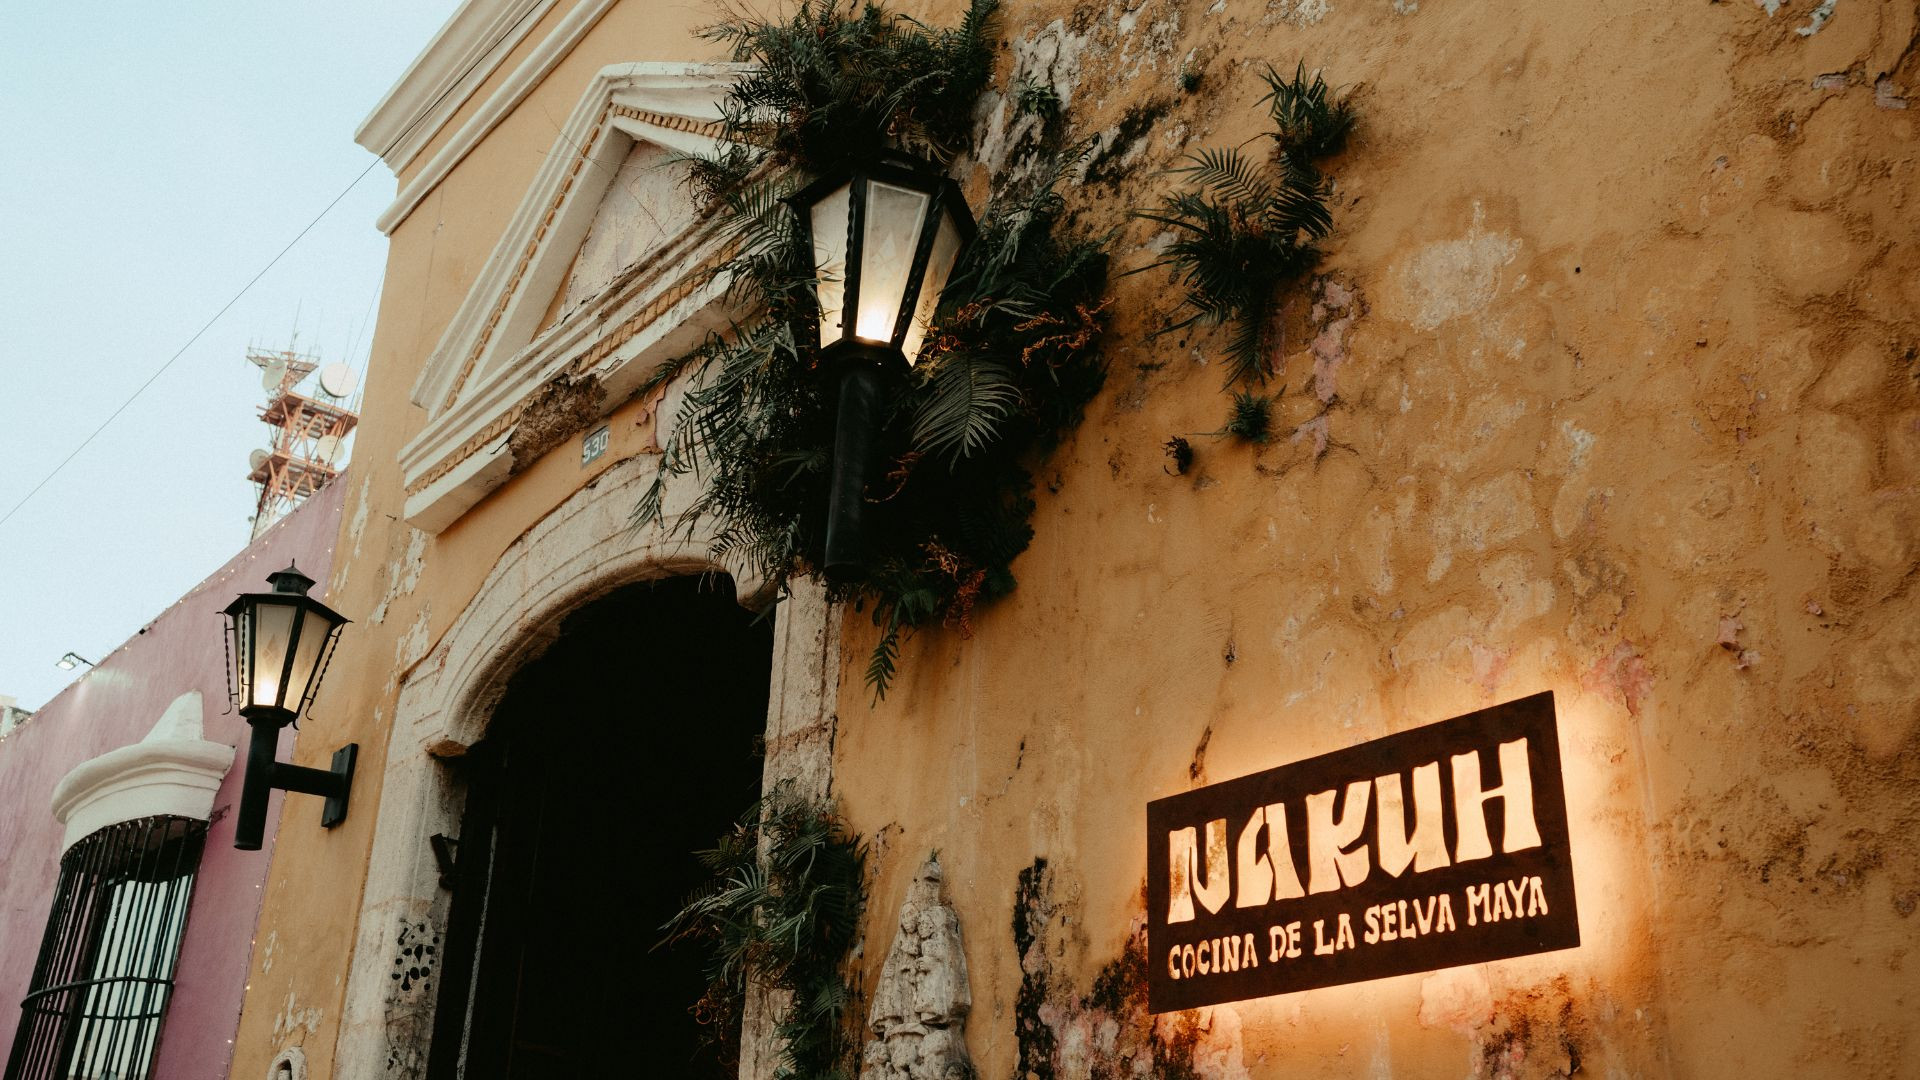 Nakuh, Cocina de la Selva Maya: Un santuario culinario maya en el centro de Mérida